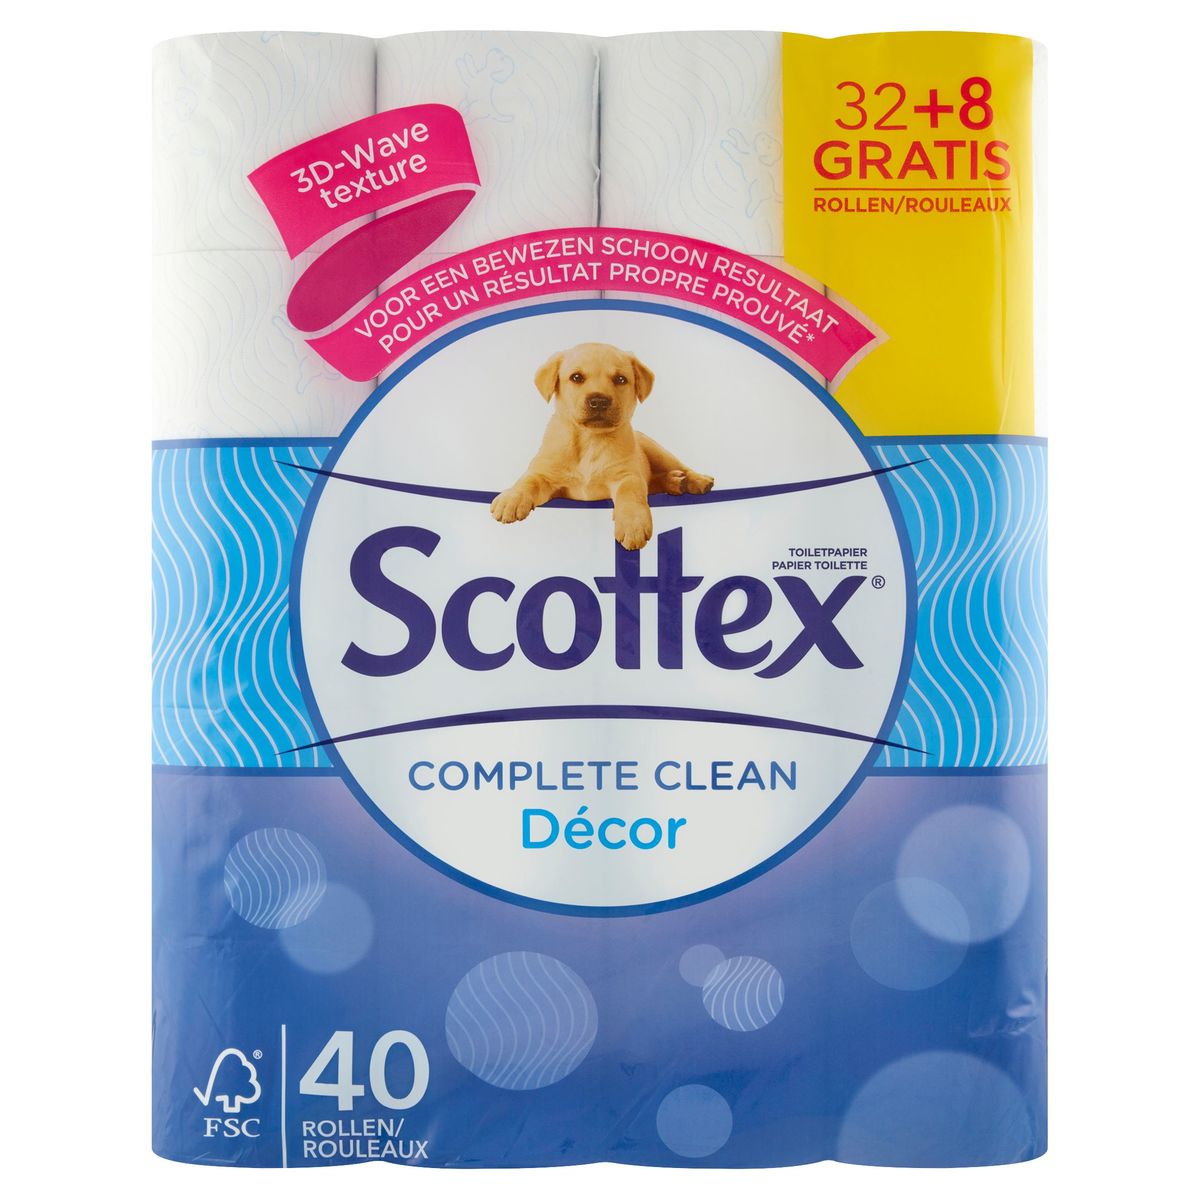 Scottex Toiletpapier Complete Clean Décor 32+8 Gratis Rollen